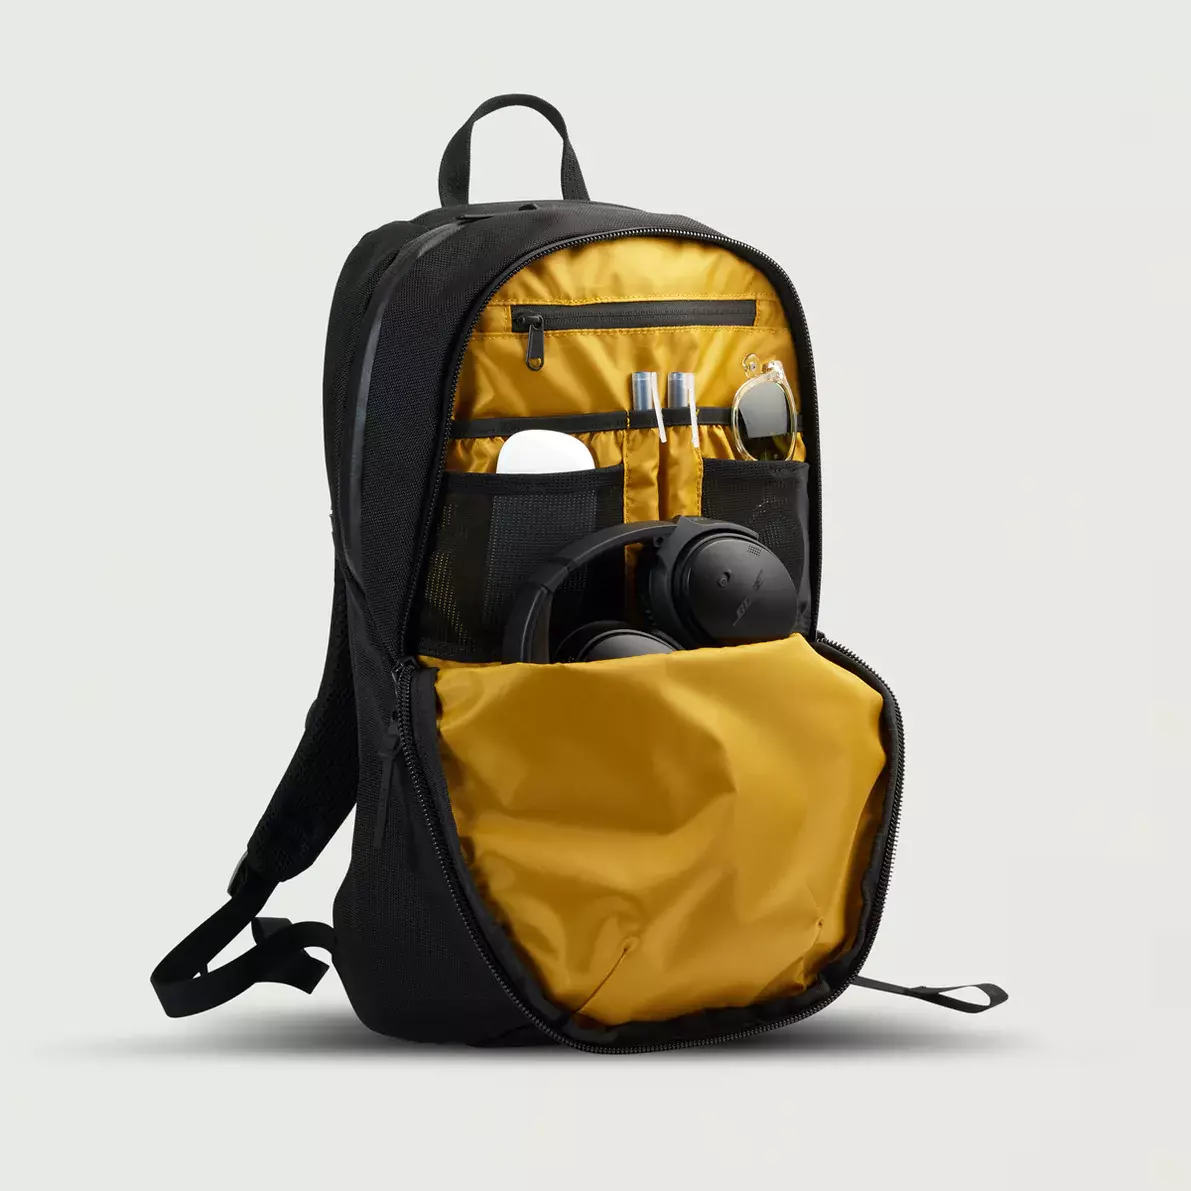 Купить рюкзак Wexley Sheldrake Daypack онлайн с бесплатной доставкой